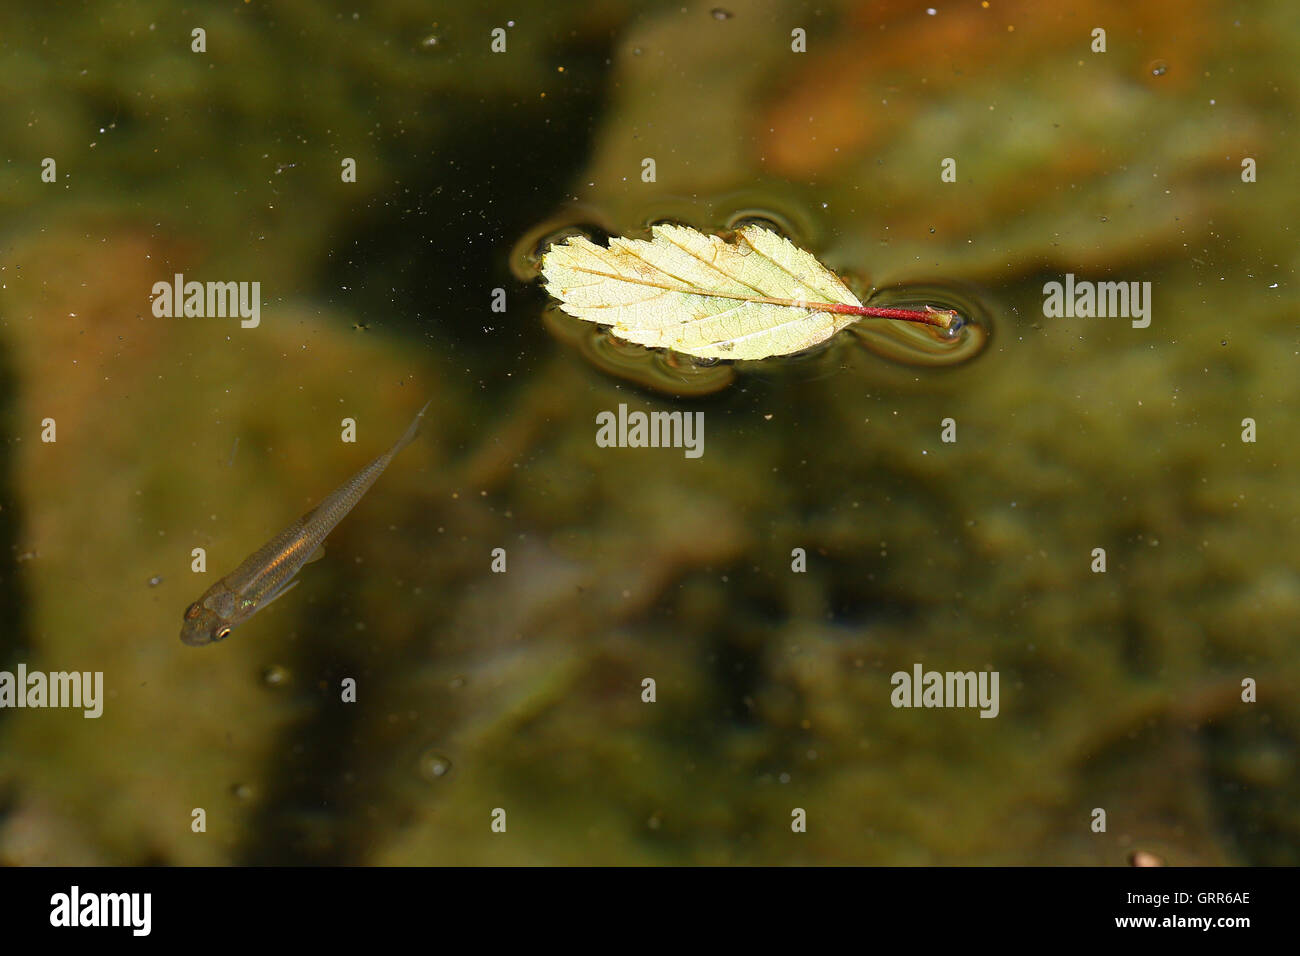 Foglia morta galleggiante in acqua con piccoli pesci tema di autunno Foto Stock